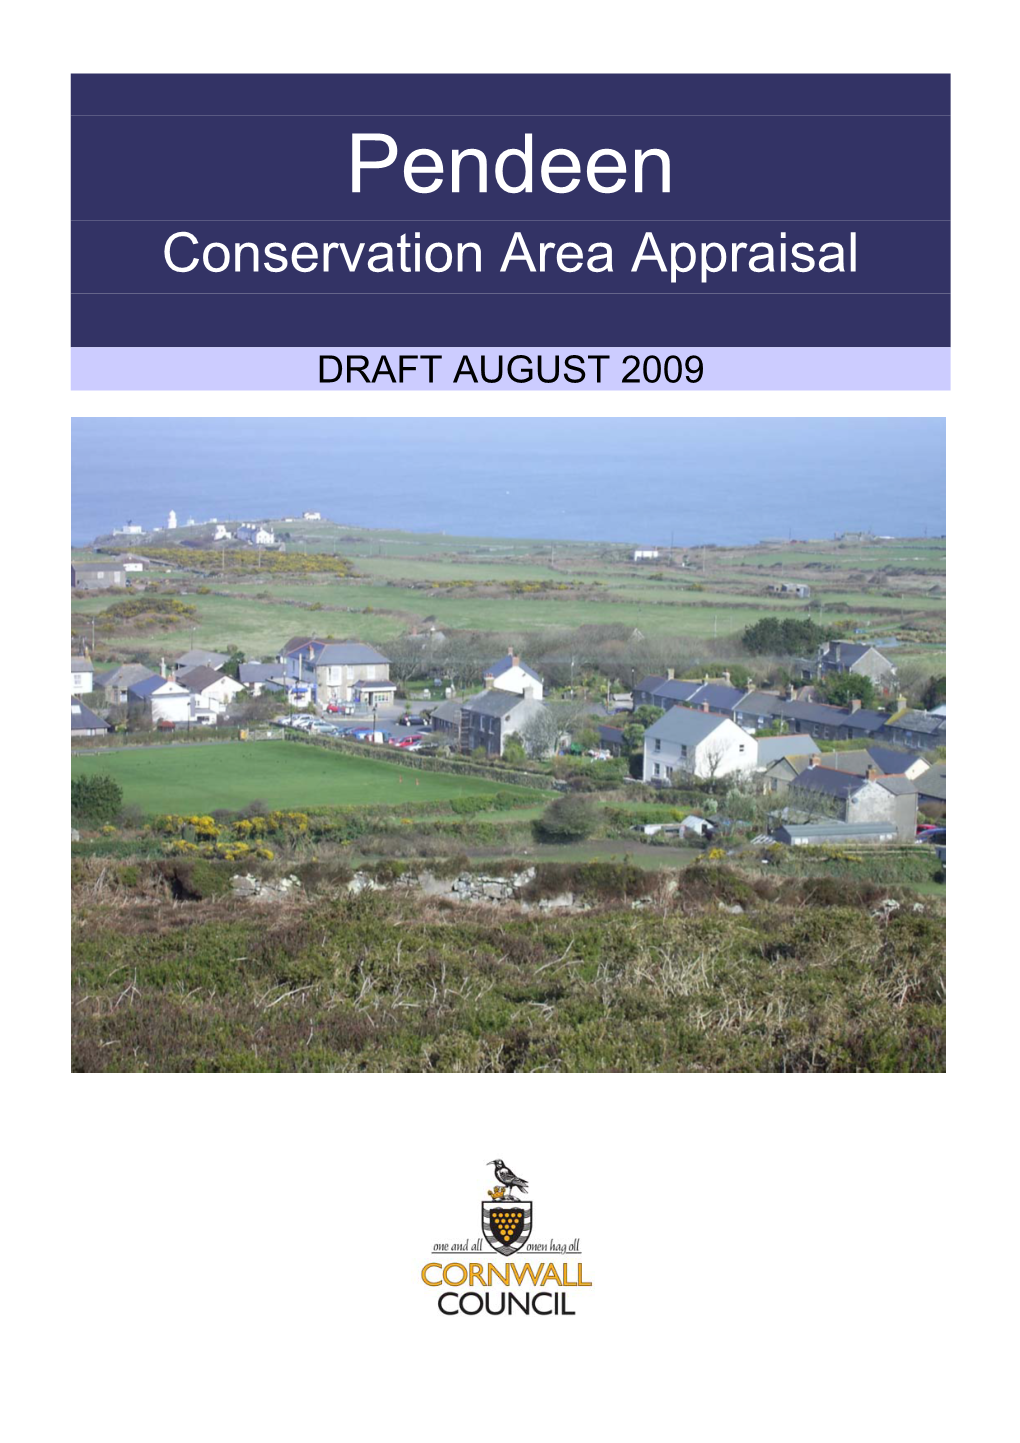 Pendeen Conservation Area Appraisal